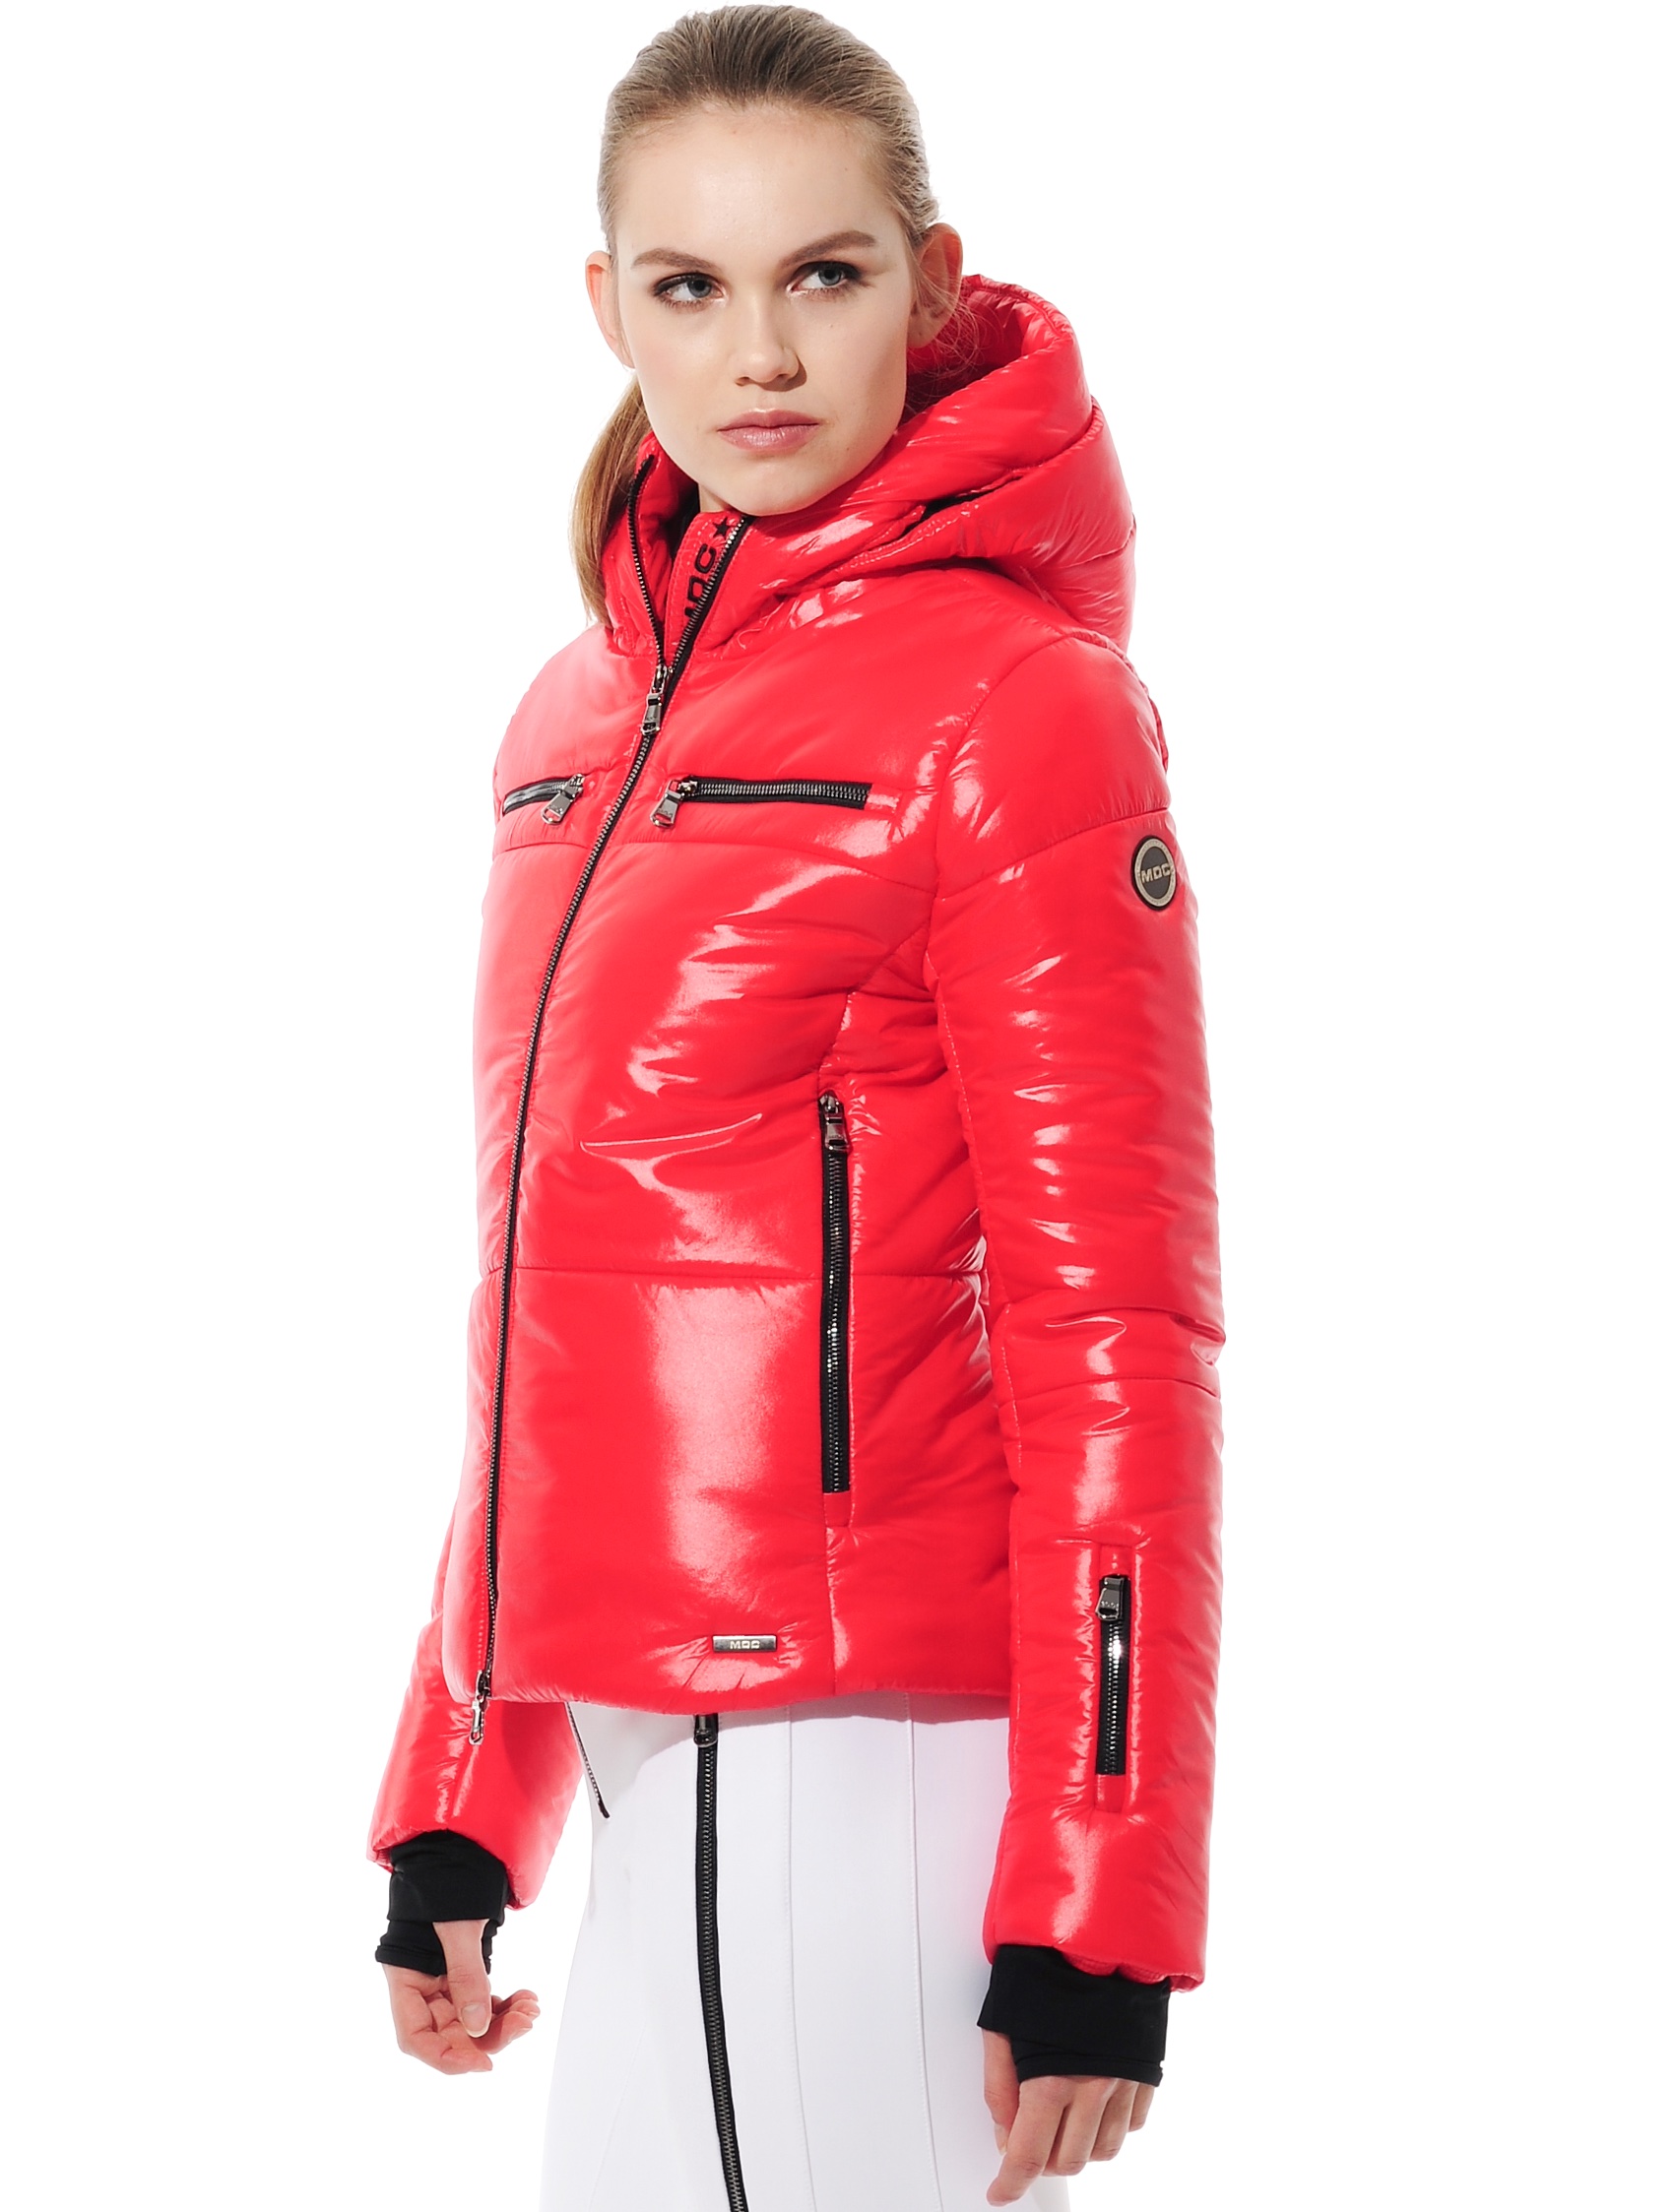 shiny ski jacket red 